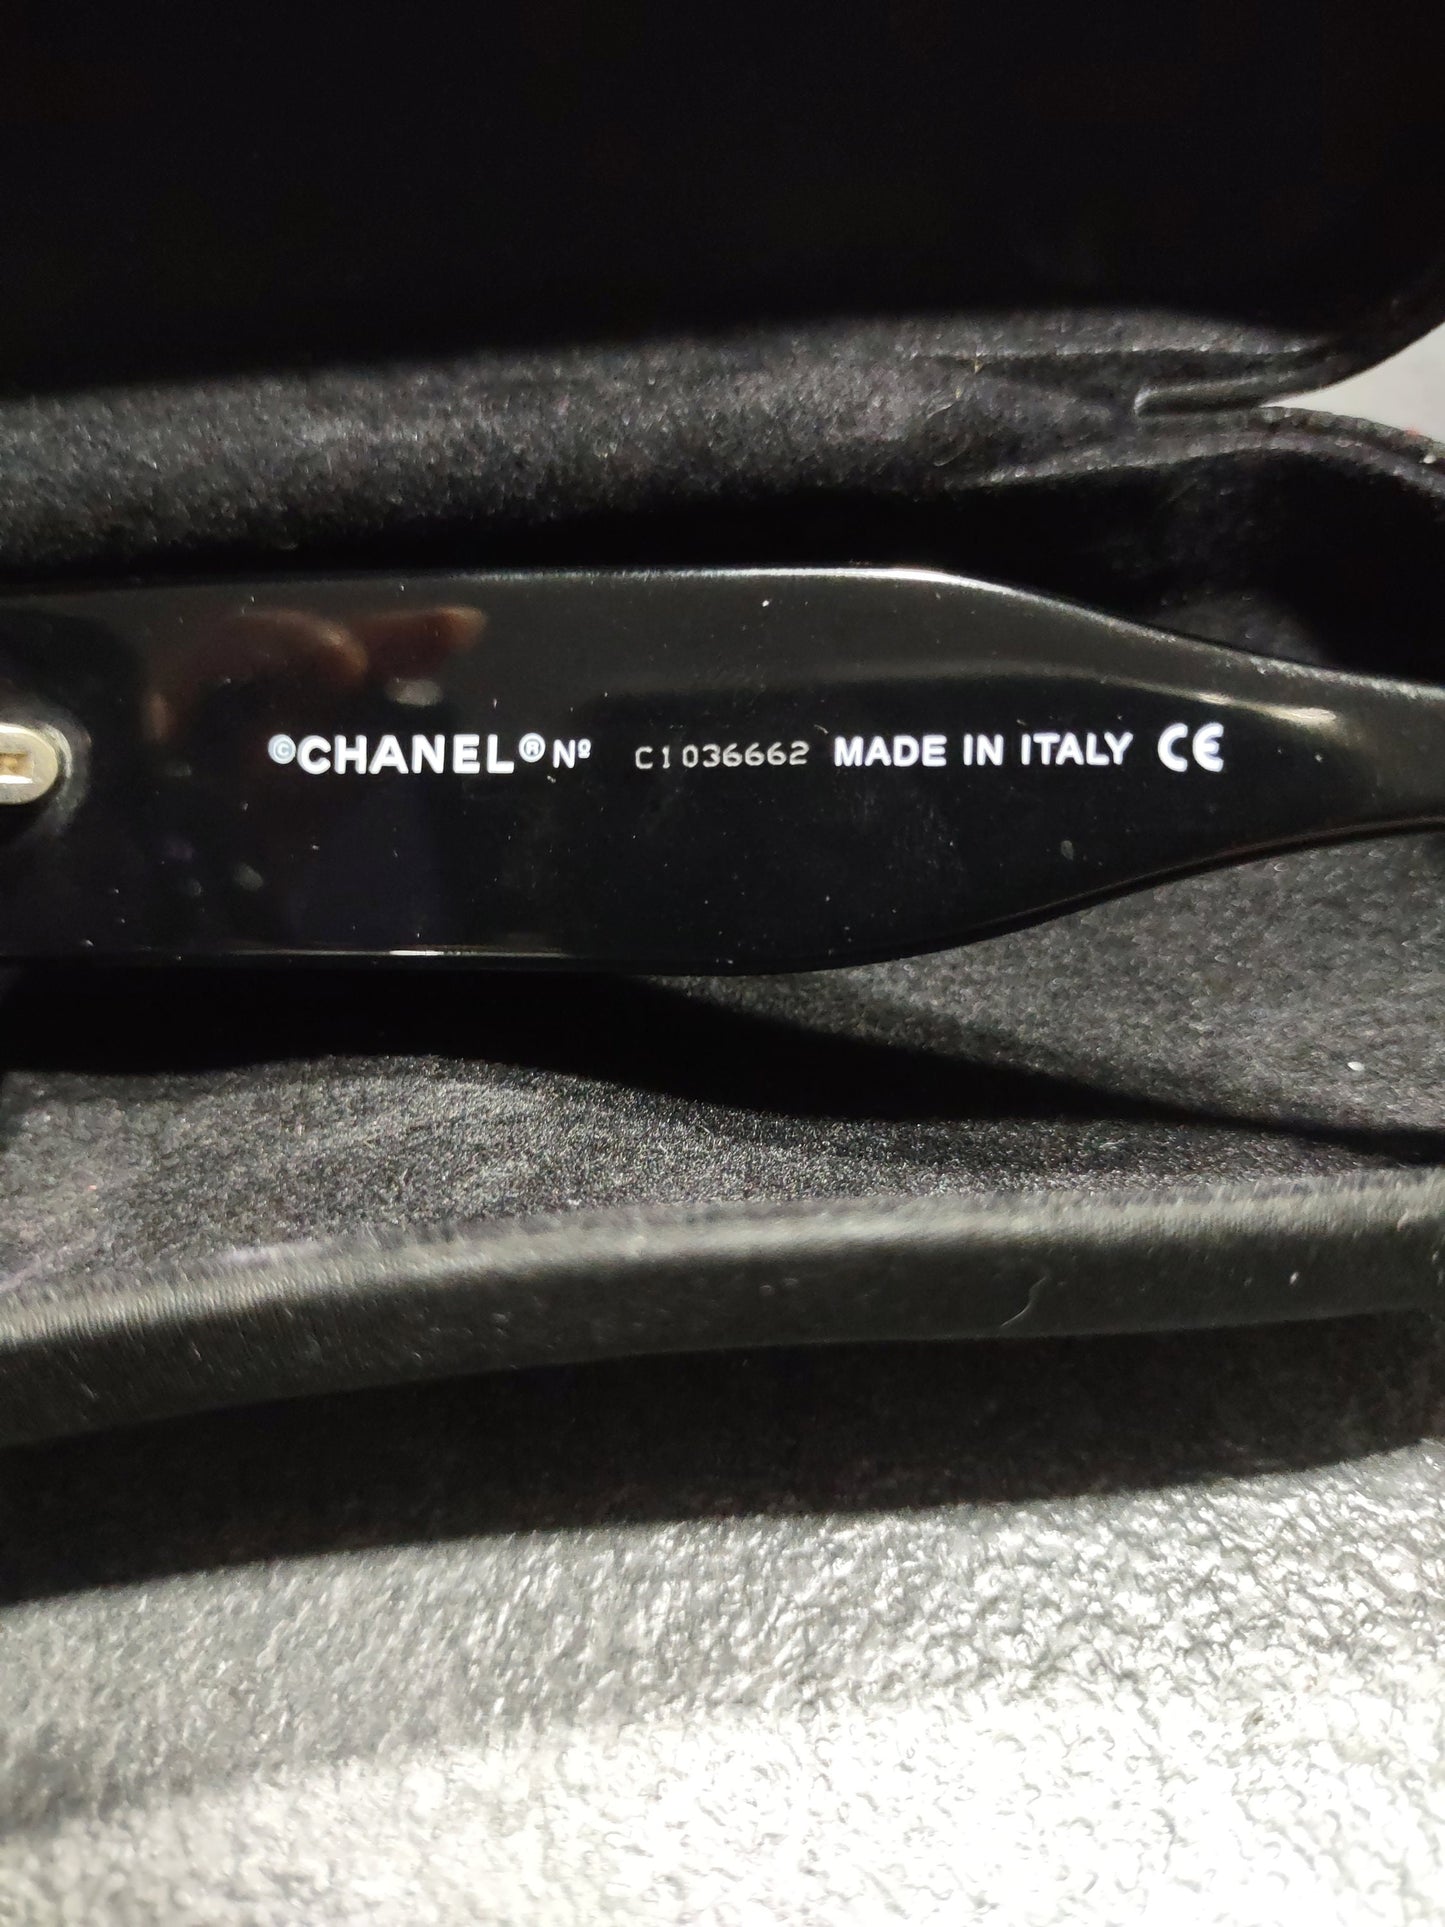 Chanel mod 5028 occhiali da sole lunetta brille y2k sfumature rimless